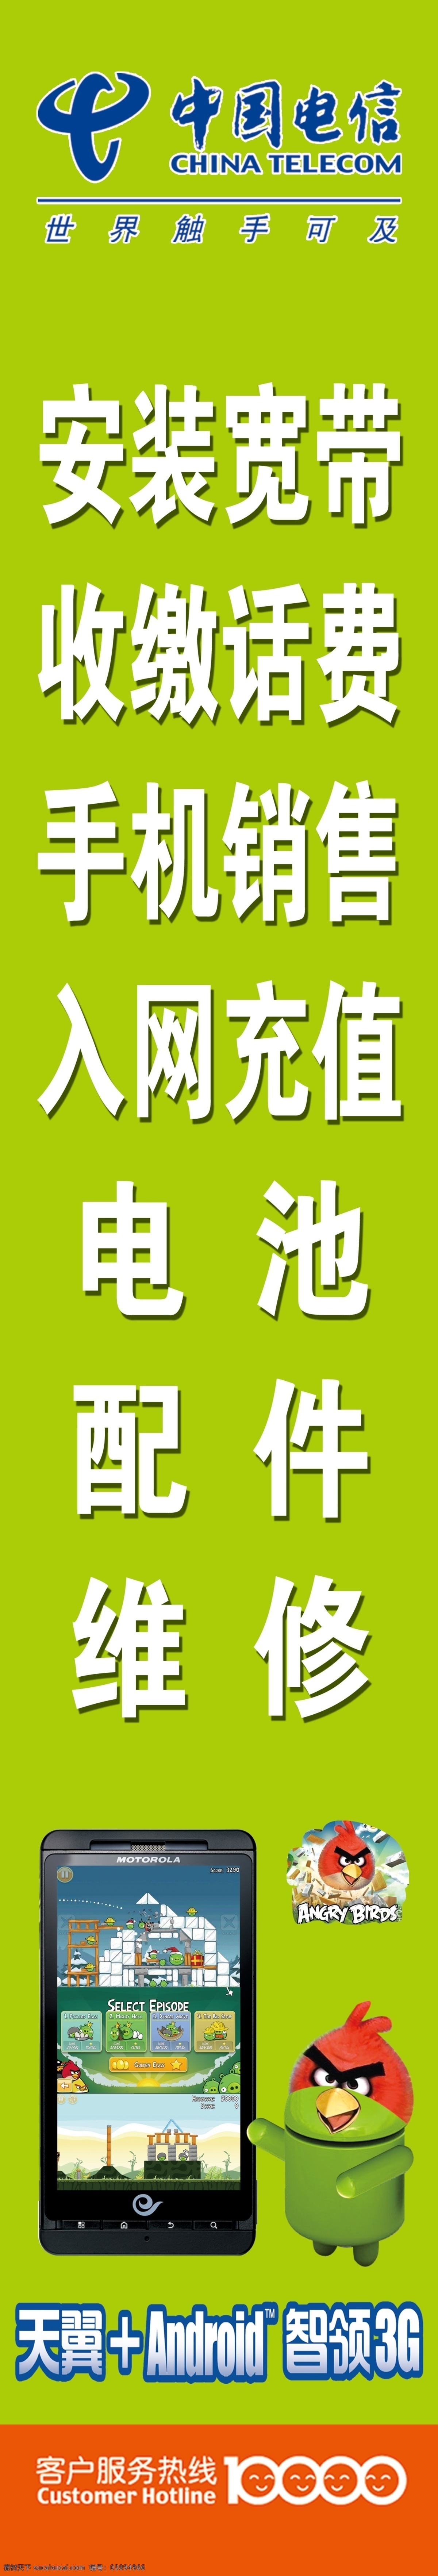 中国电信 电信标志 电信服务 愤怒的小鸟 红色小鸟 3g手机 宽带 缴话费 手机修理 配件 电池 维修 果绿色 电信广告牌 广告设计模板 源文件